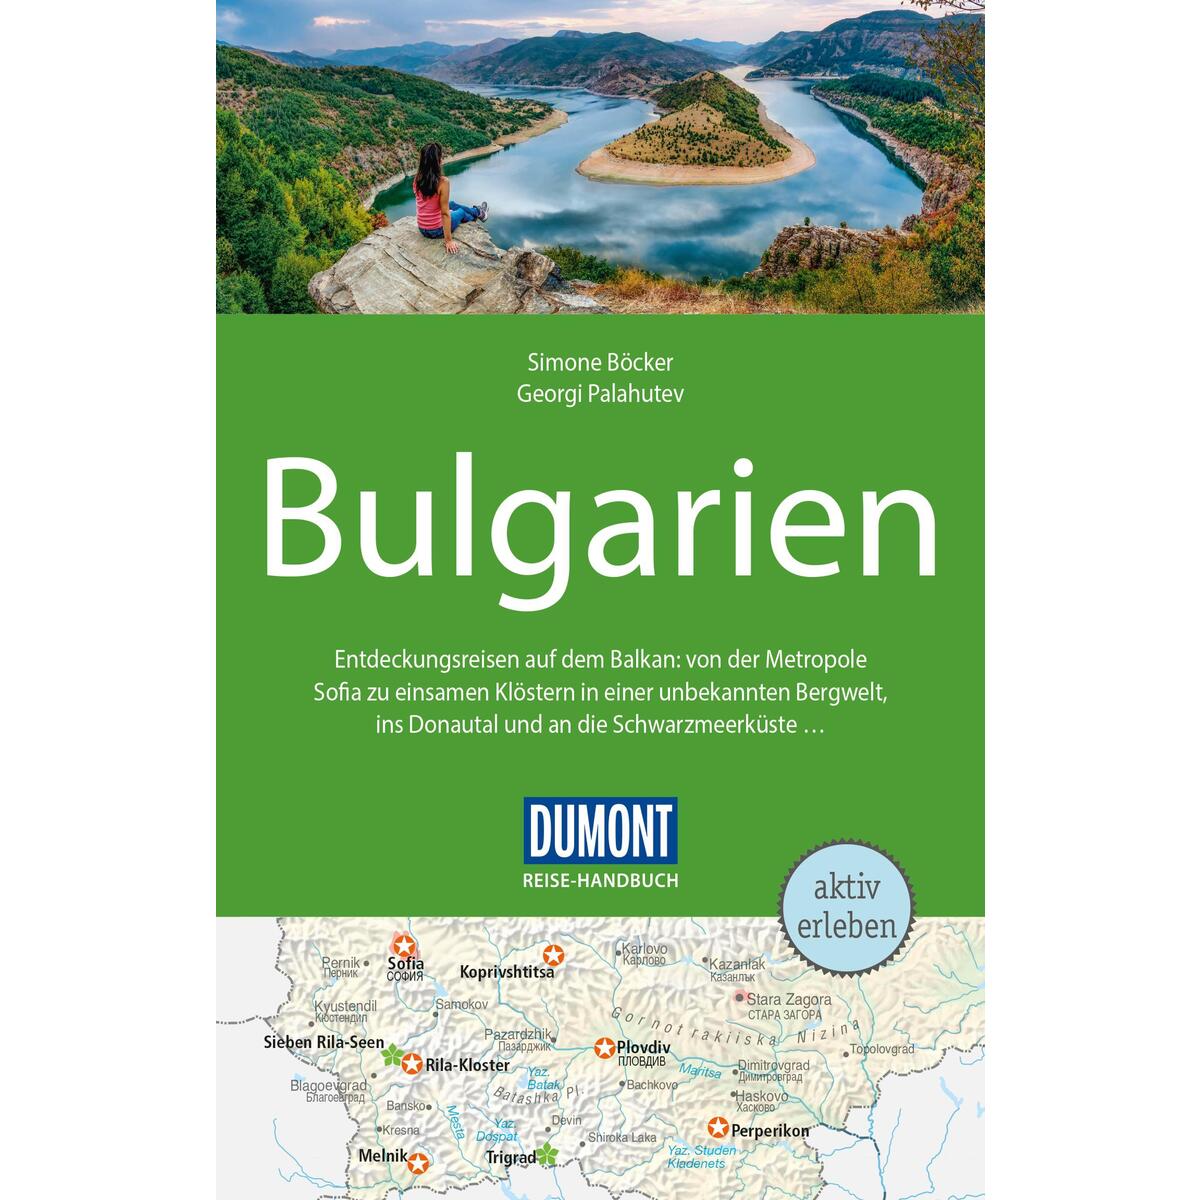 DuMont Reise-Handbuch Reiseführer Bulgarien von Dumont Reise Vlg GmbH + C